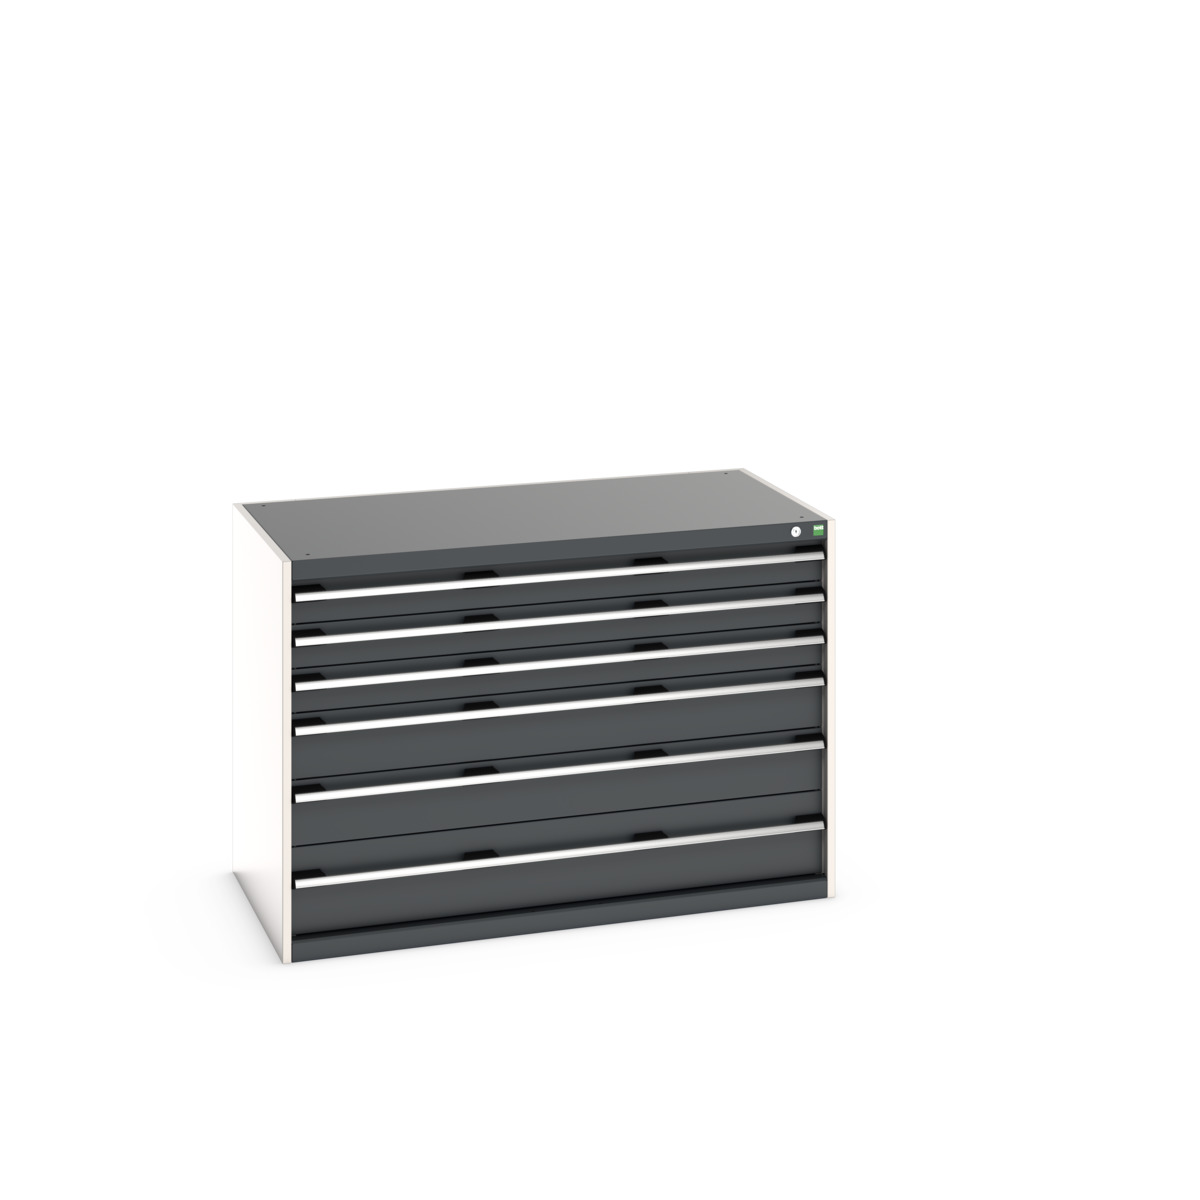 40030086.19V - cubio drawer cabinet